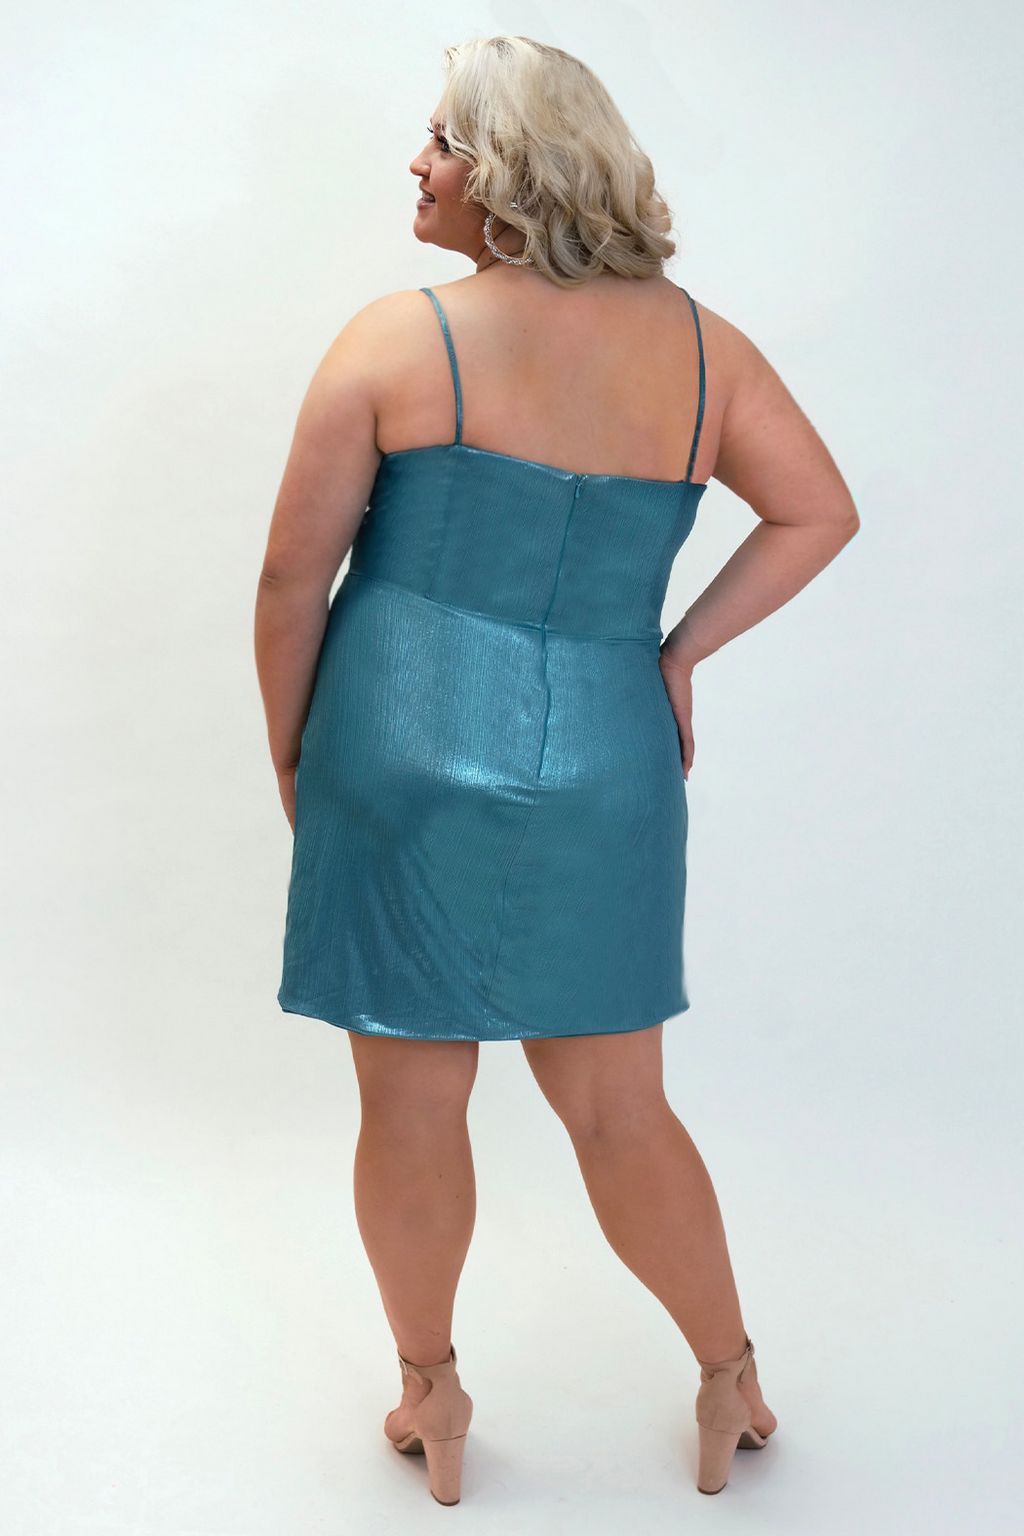 Plus Size Dresses Short Plus Size Spaghetti Strap Homecoming Dress Blue Lagoon